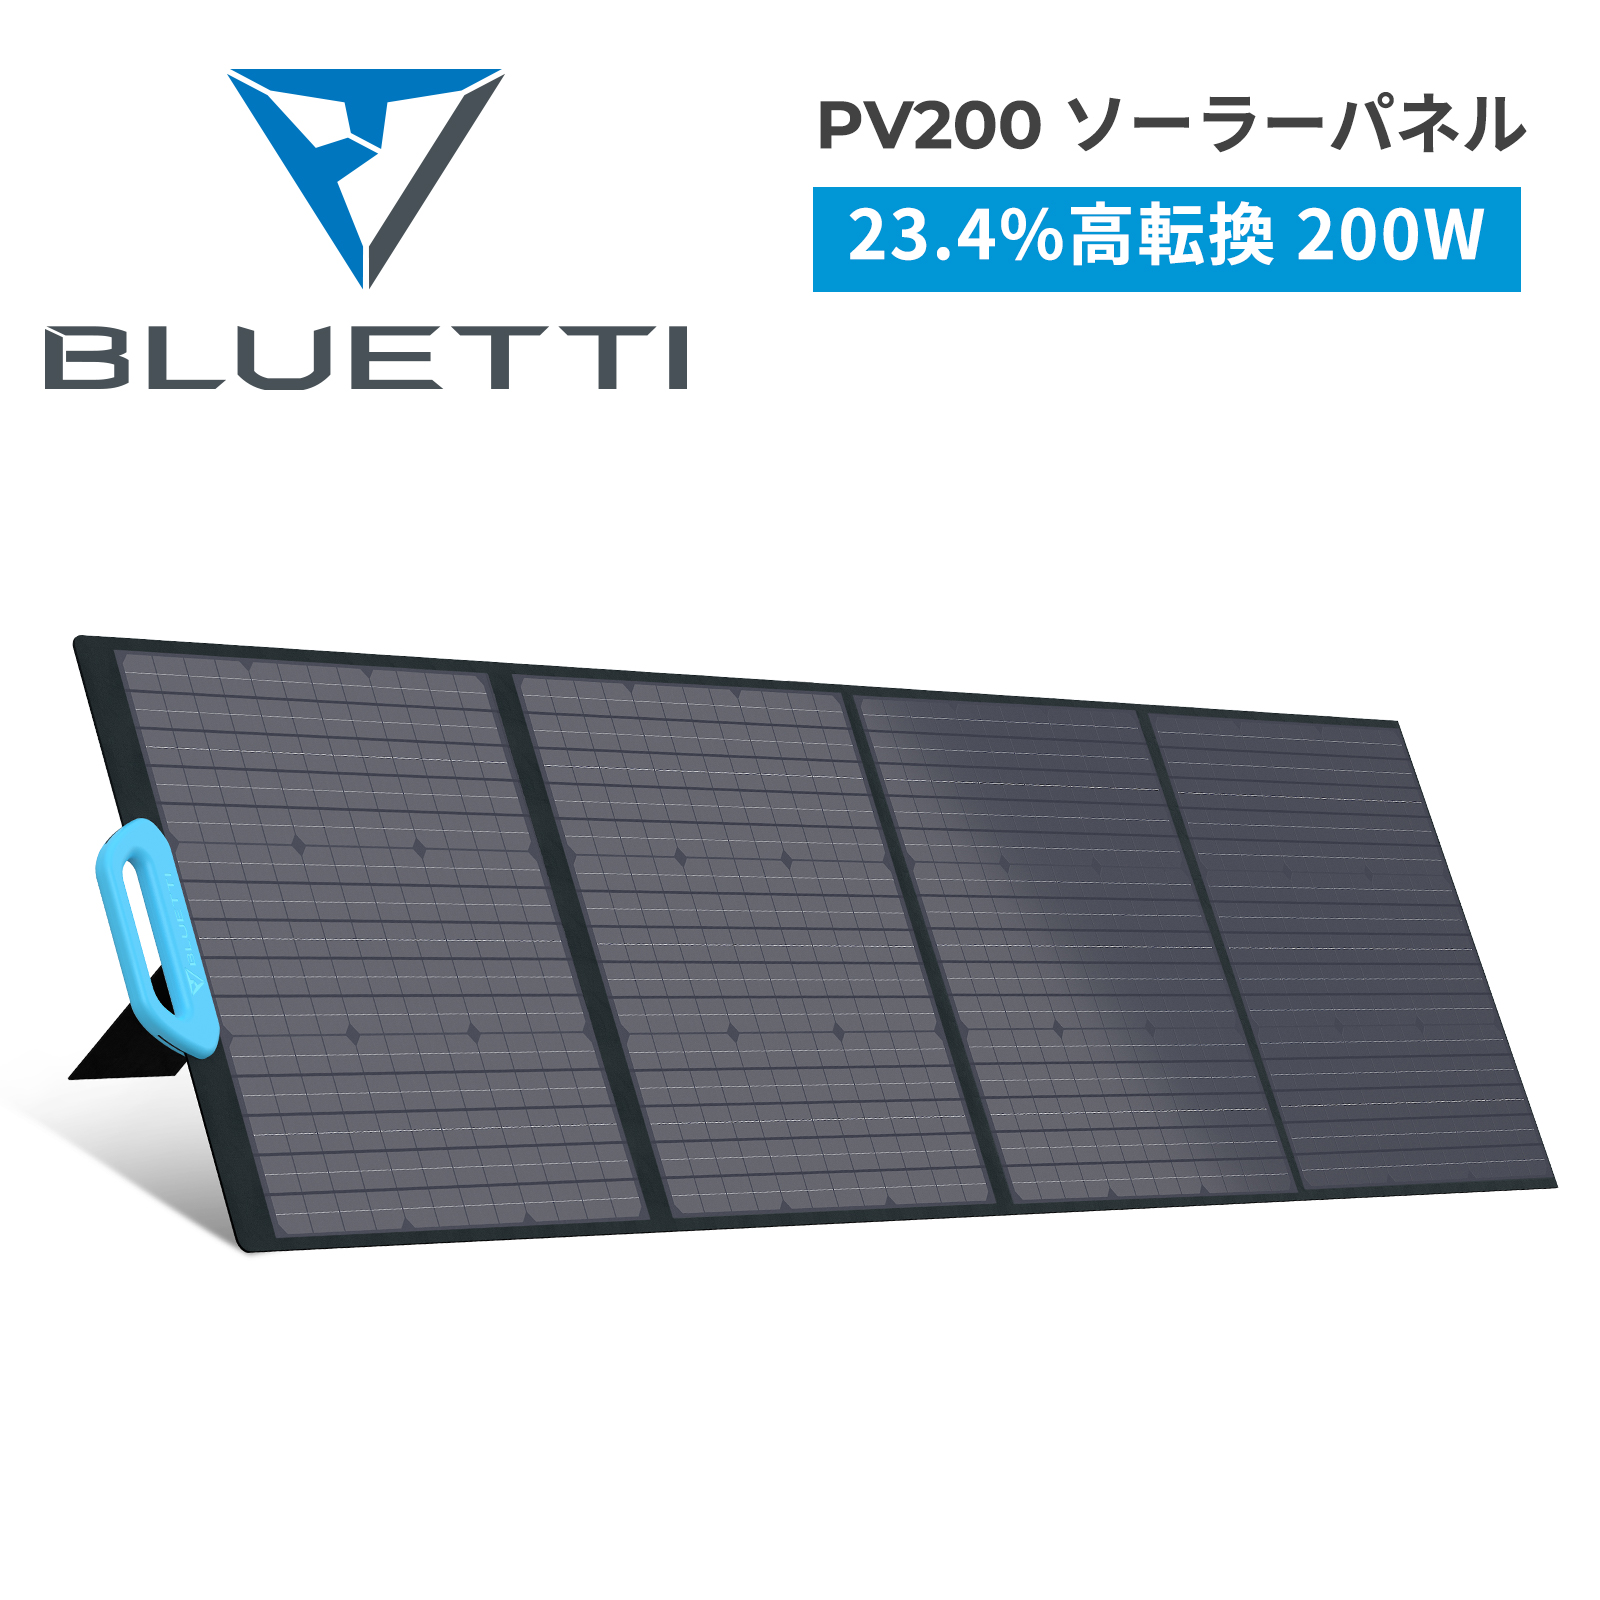 BLUETTI JAPAN ショップBLUETTI 高転換率 200W折り畳み式太陽光パネル